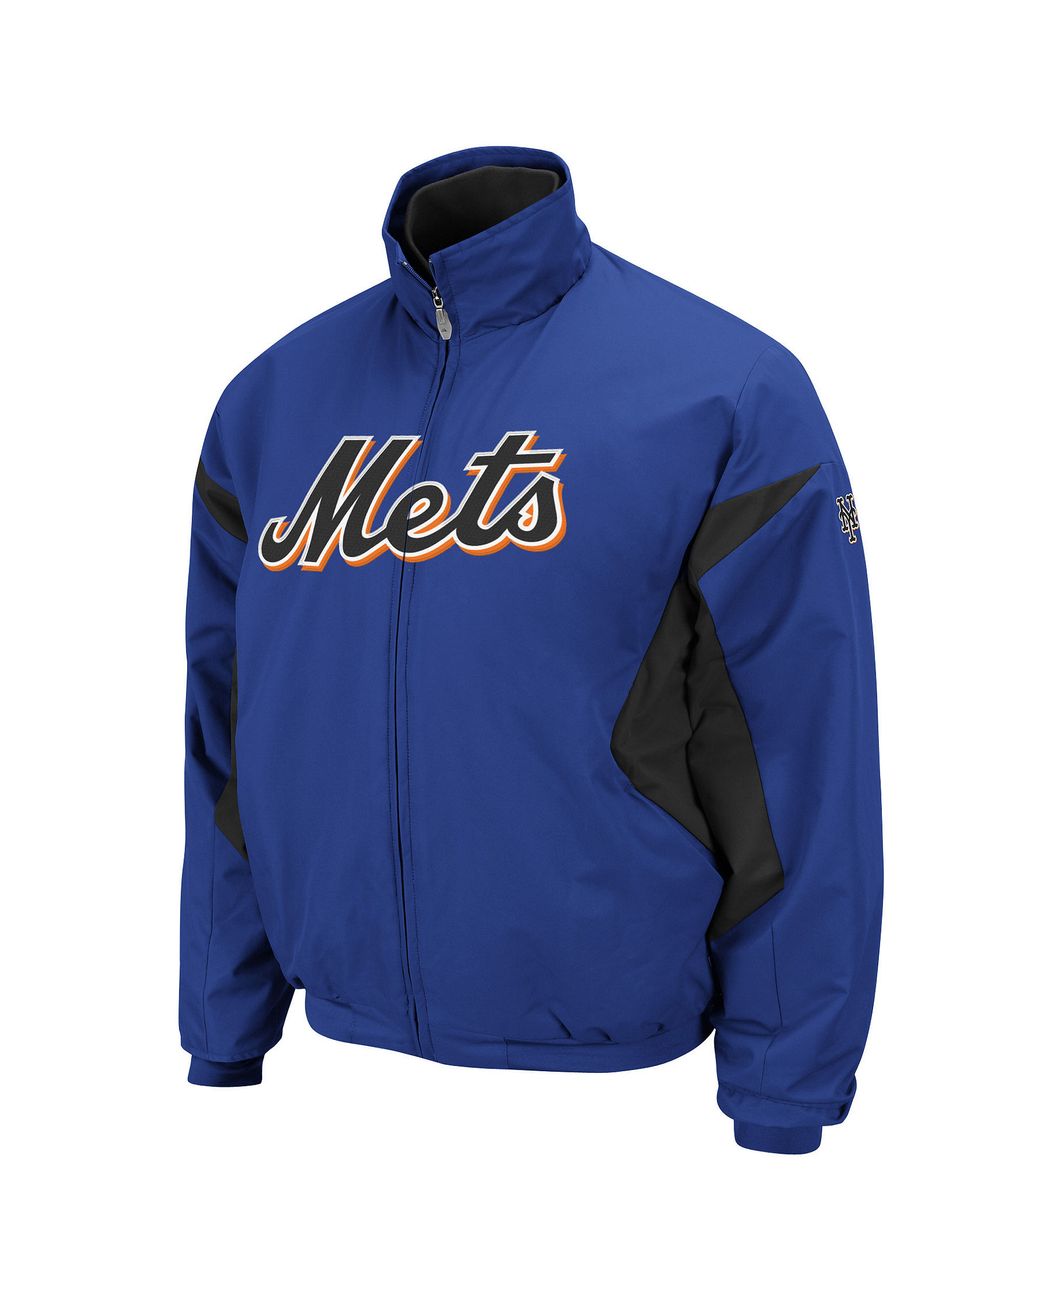 Majestic New York Mets MLB Fan Shop